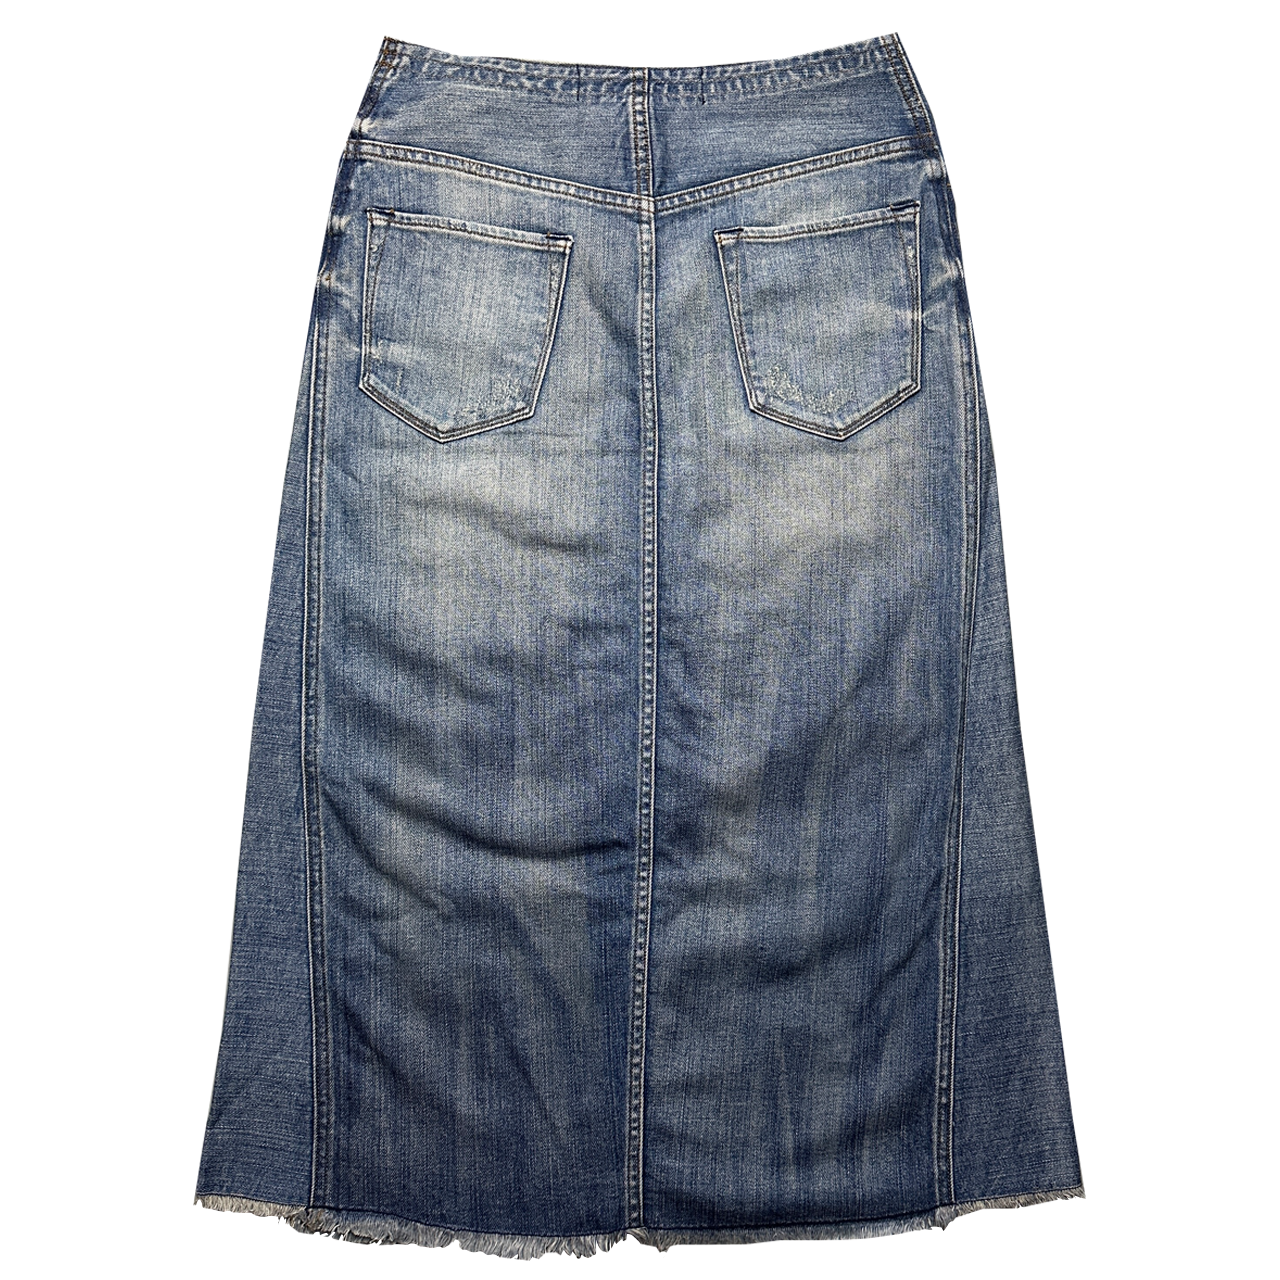 Wrangler Skirt